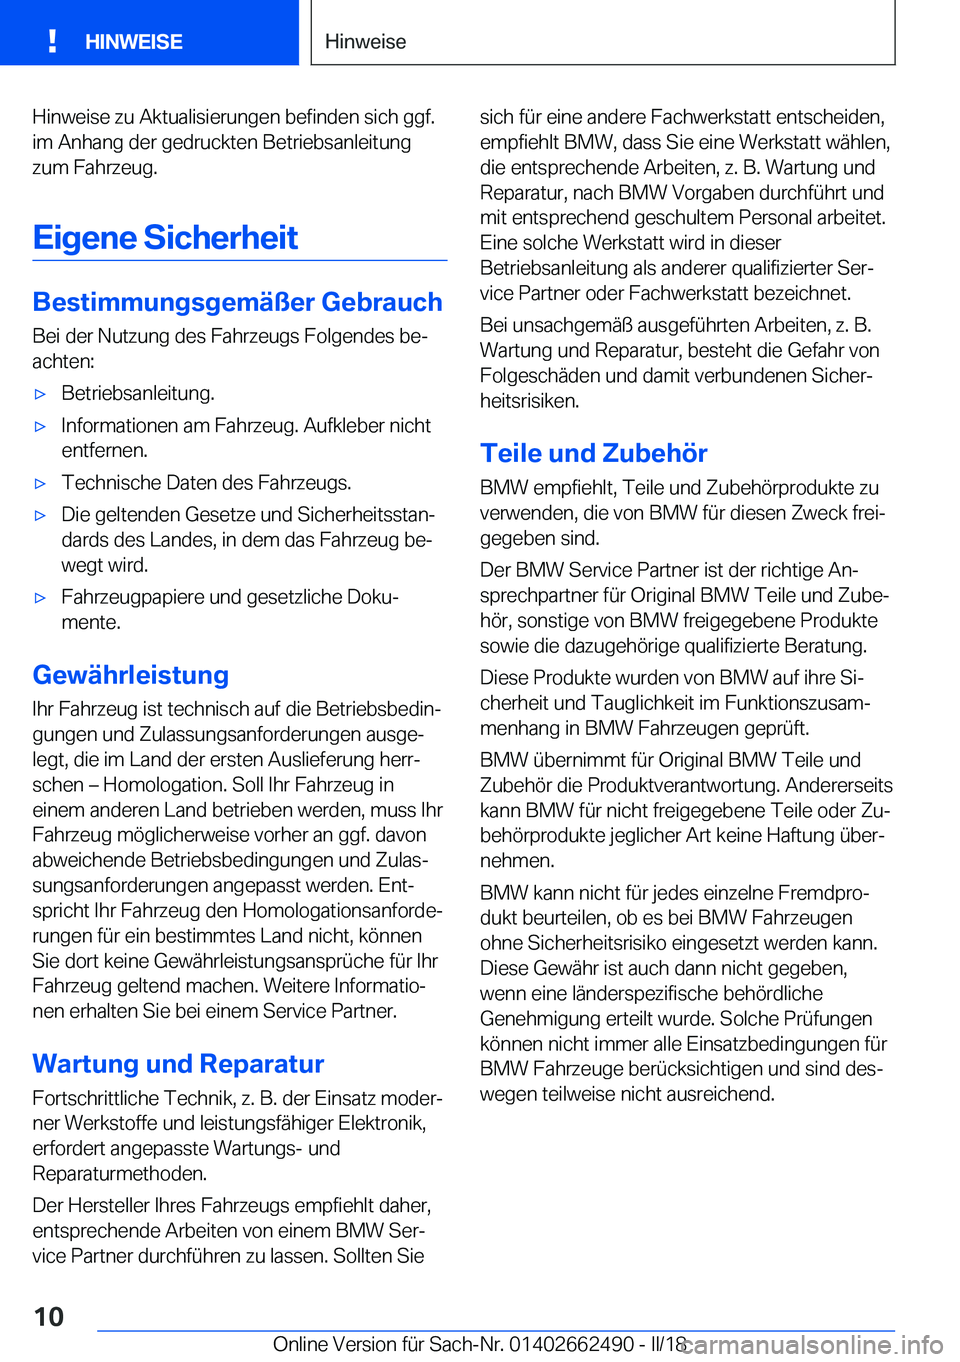 BMW X5 M 2018  Betriebsanleitungen (in German) �H�i�n�w�e�i�s�e� �z�u� �A�k�t�u�a�l�i�s�i�e�r�u�n�g�e�n� �b�e�f�i�n�d�e�n� �s�i�c�h� �g�g�f�.�i�m� �A�n�h�a�n�g� �d�e�r� �g�e�d�r�u�c�k�t�e�n� �B�e�t�r�i�e�b�s�a�n�l�e�i�t�u�n�g�z�u�m� �F�a�h�r�z�e�u